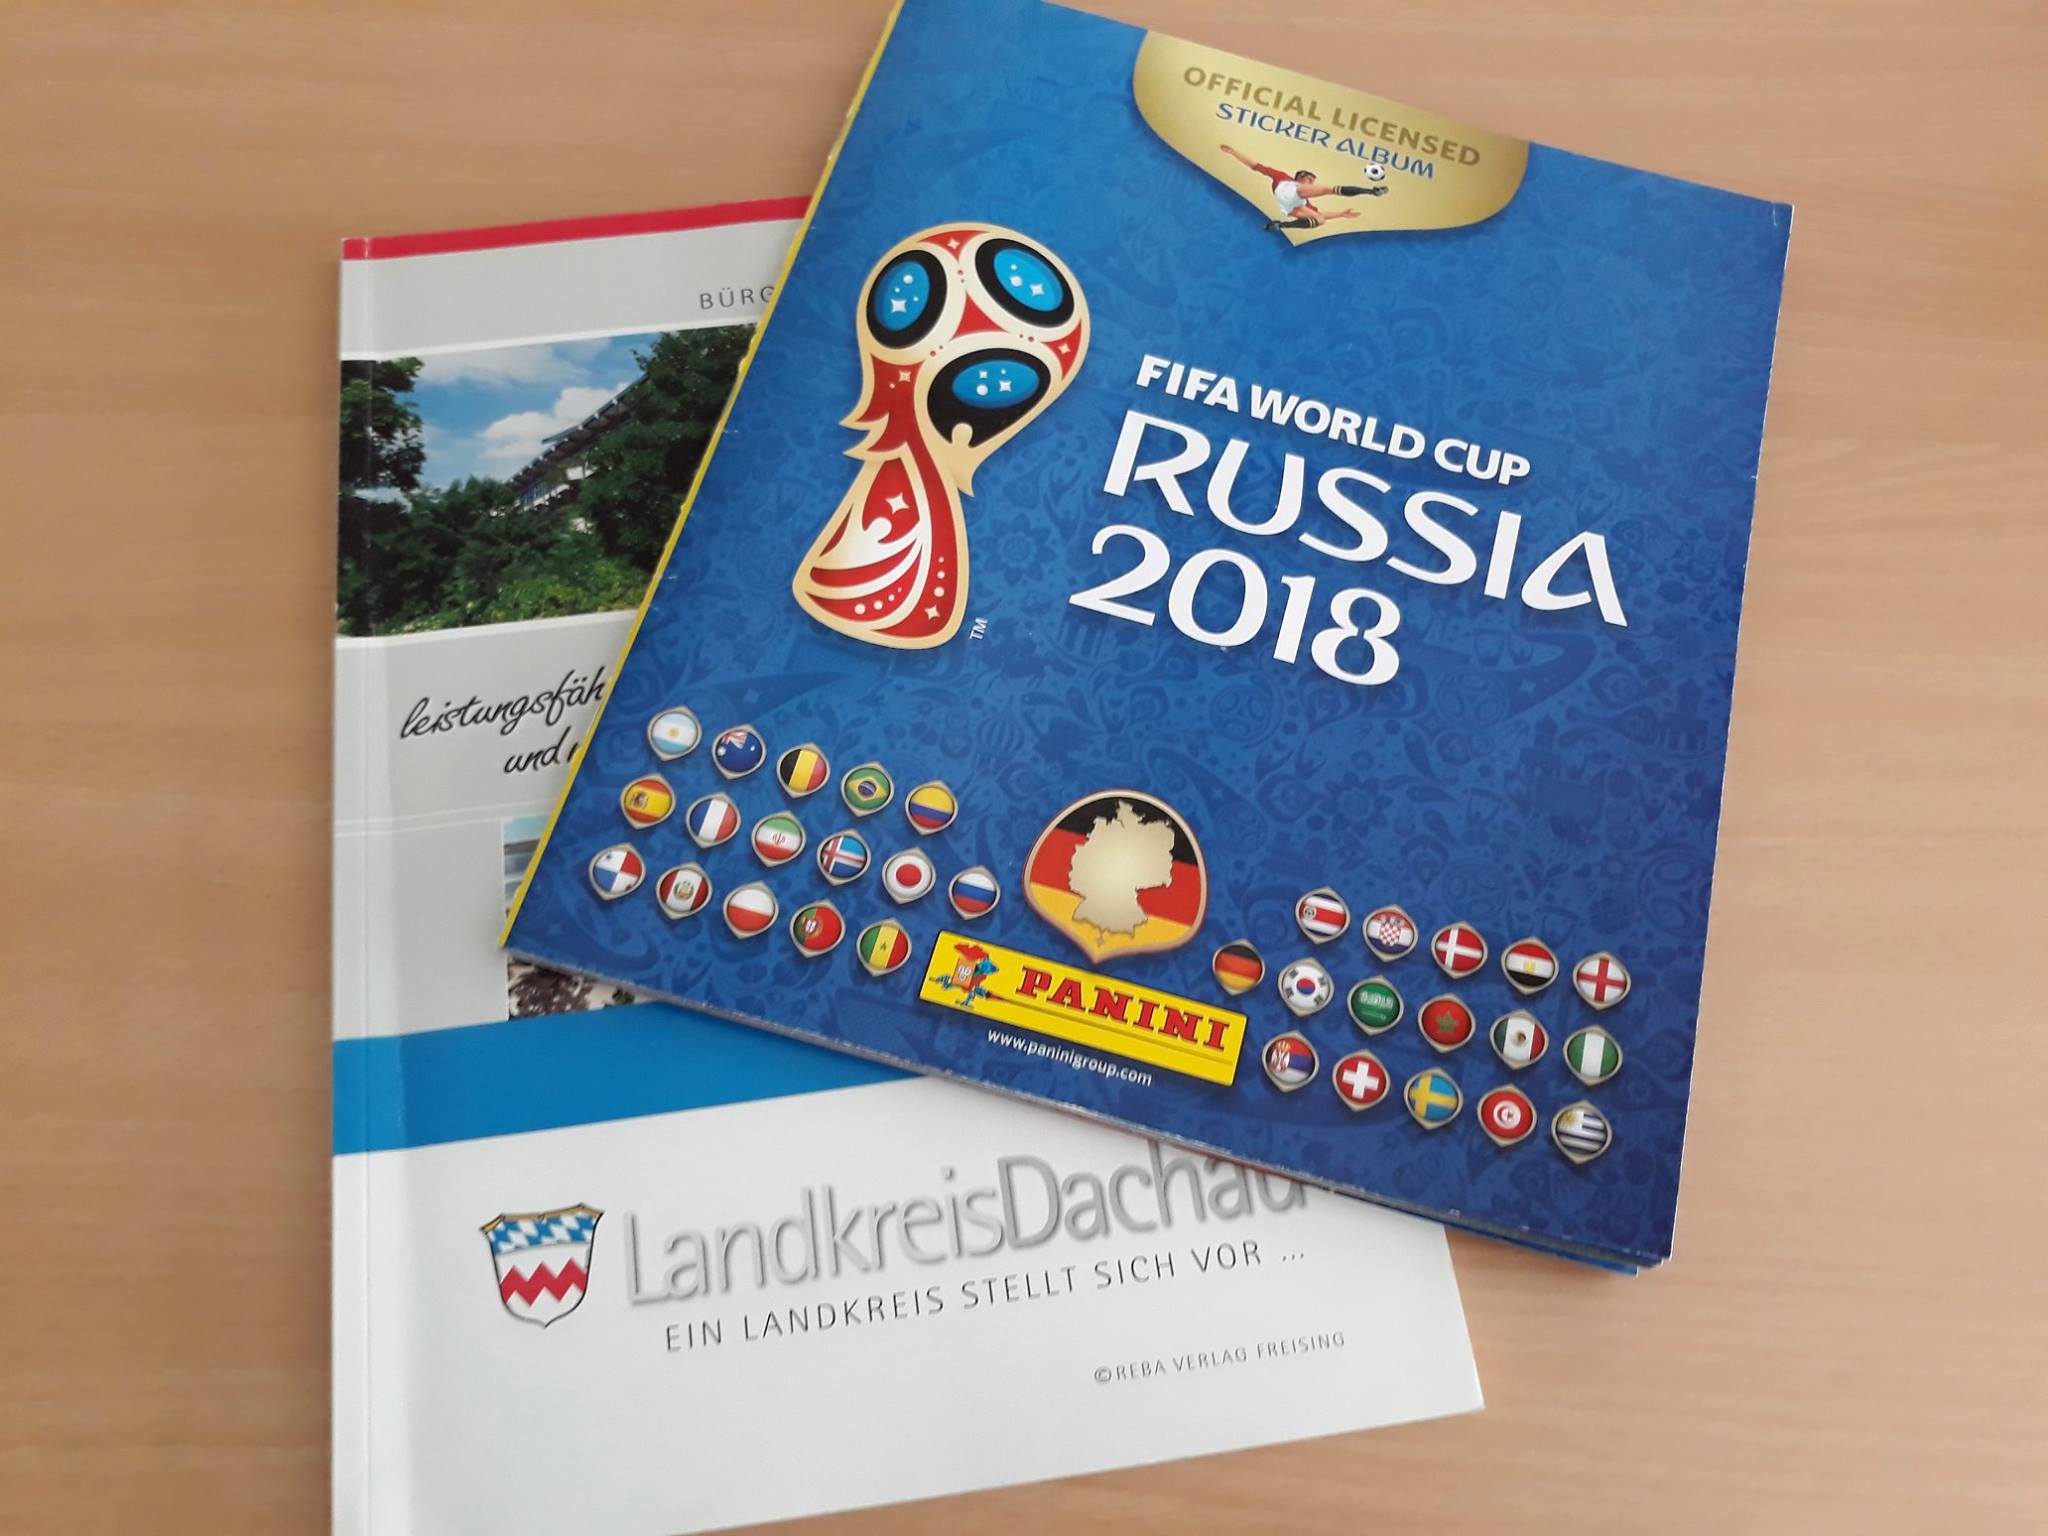 Fußball Weltmeisterschaft im Landkreis Dachau - Tauschbörse für Sammelbilder am 21.06.18 im Landratsamt